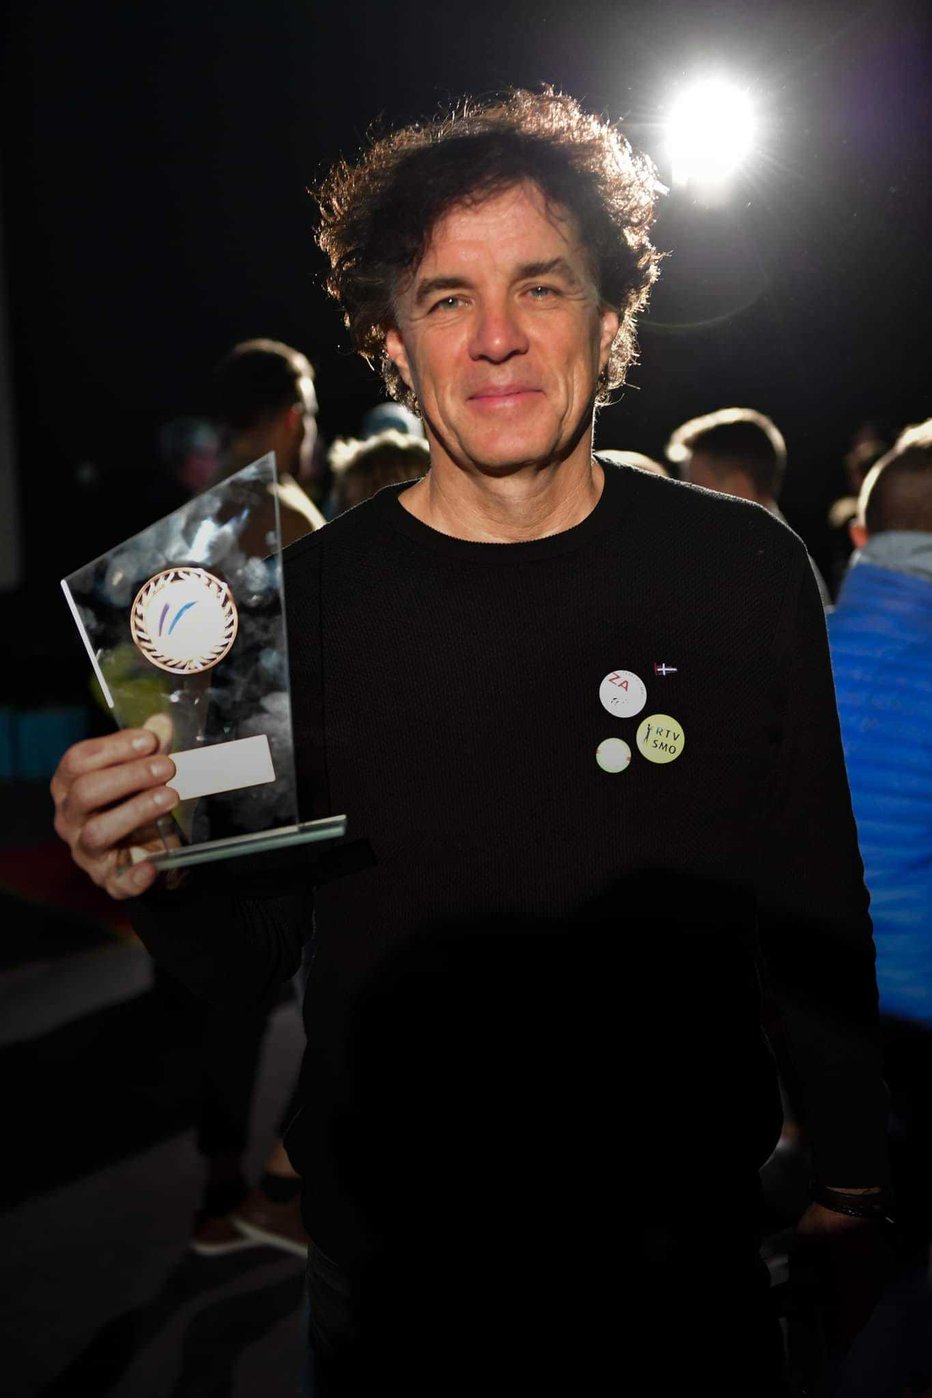 Fotografija: Zvezdan je osvojil tretje mesto na Triatlonu Slovenije. FOTO: osebni arhiv
